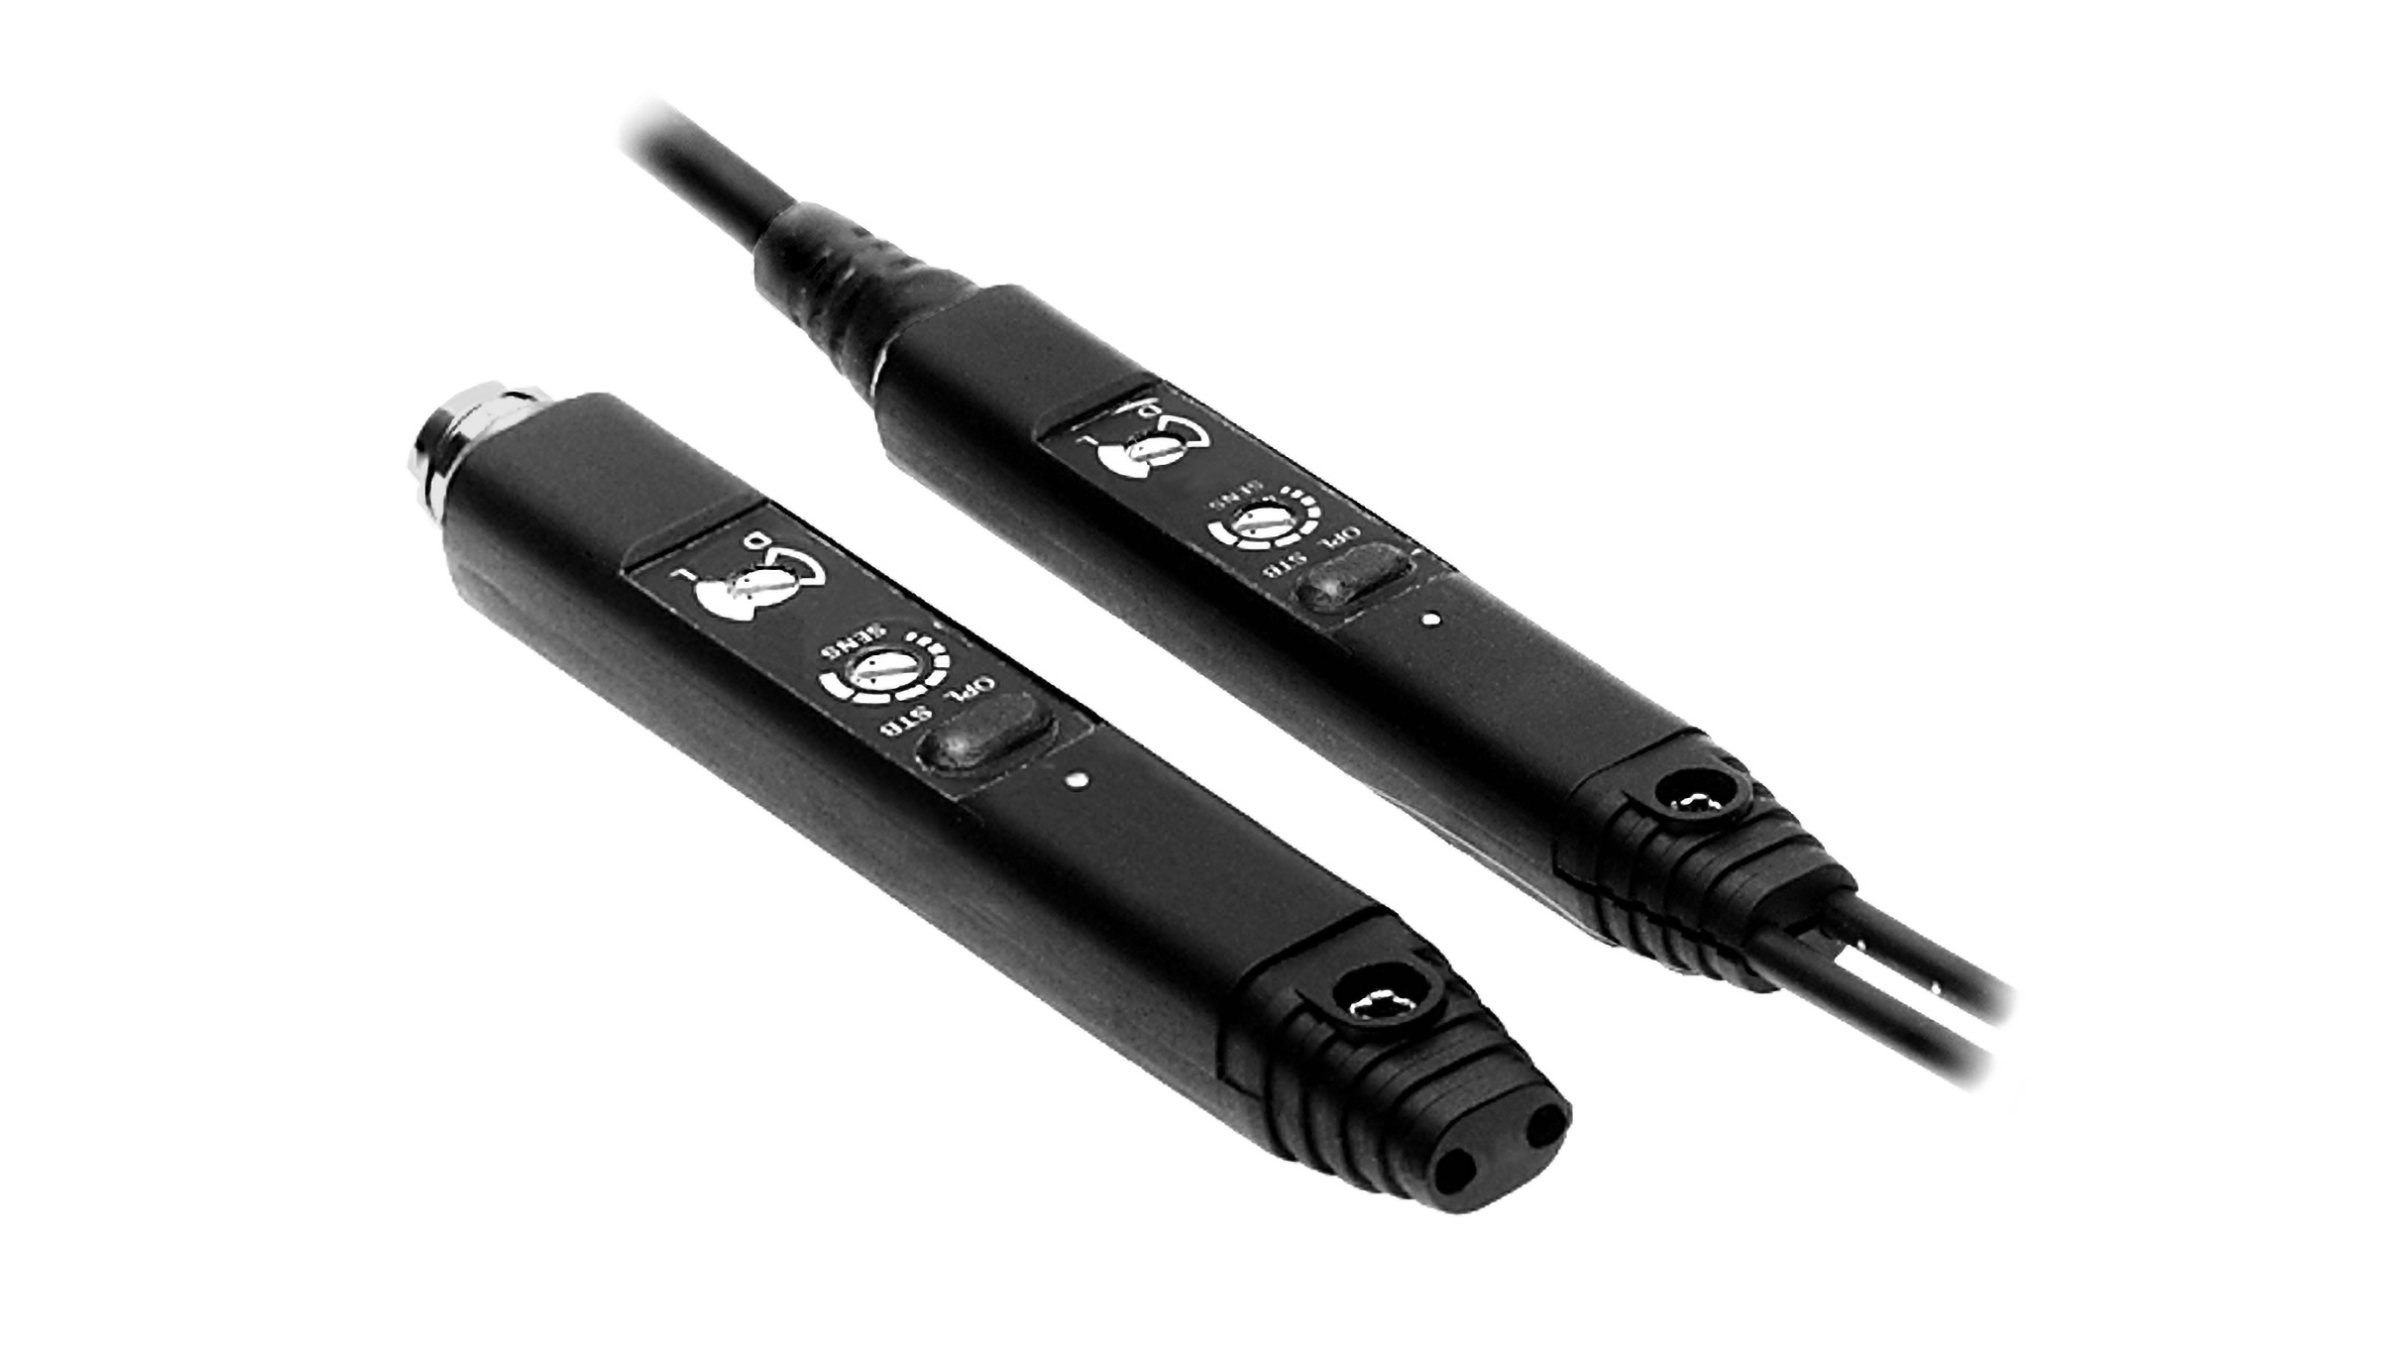 2 sensores negro, rectangulares, largos y delgados, uno con cables integrados